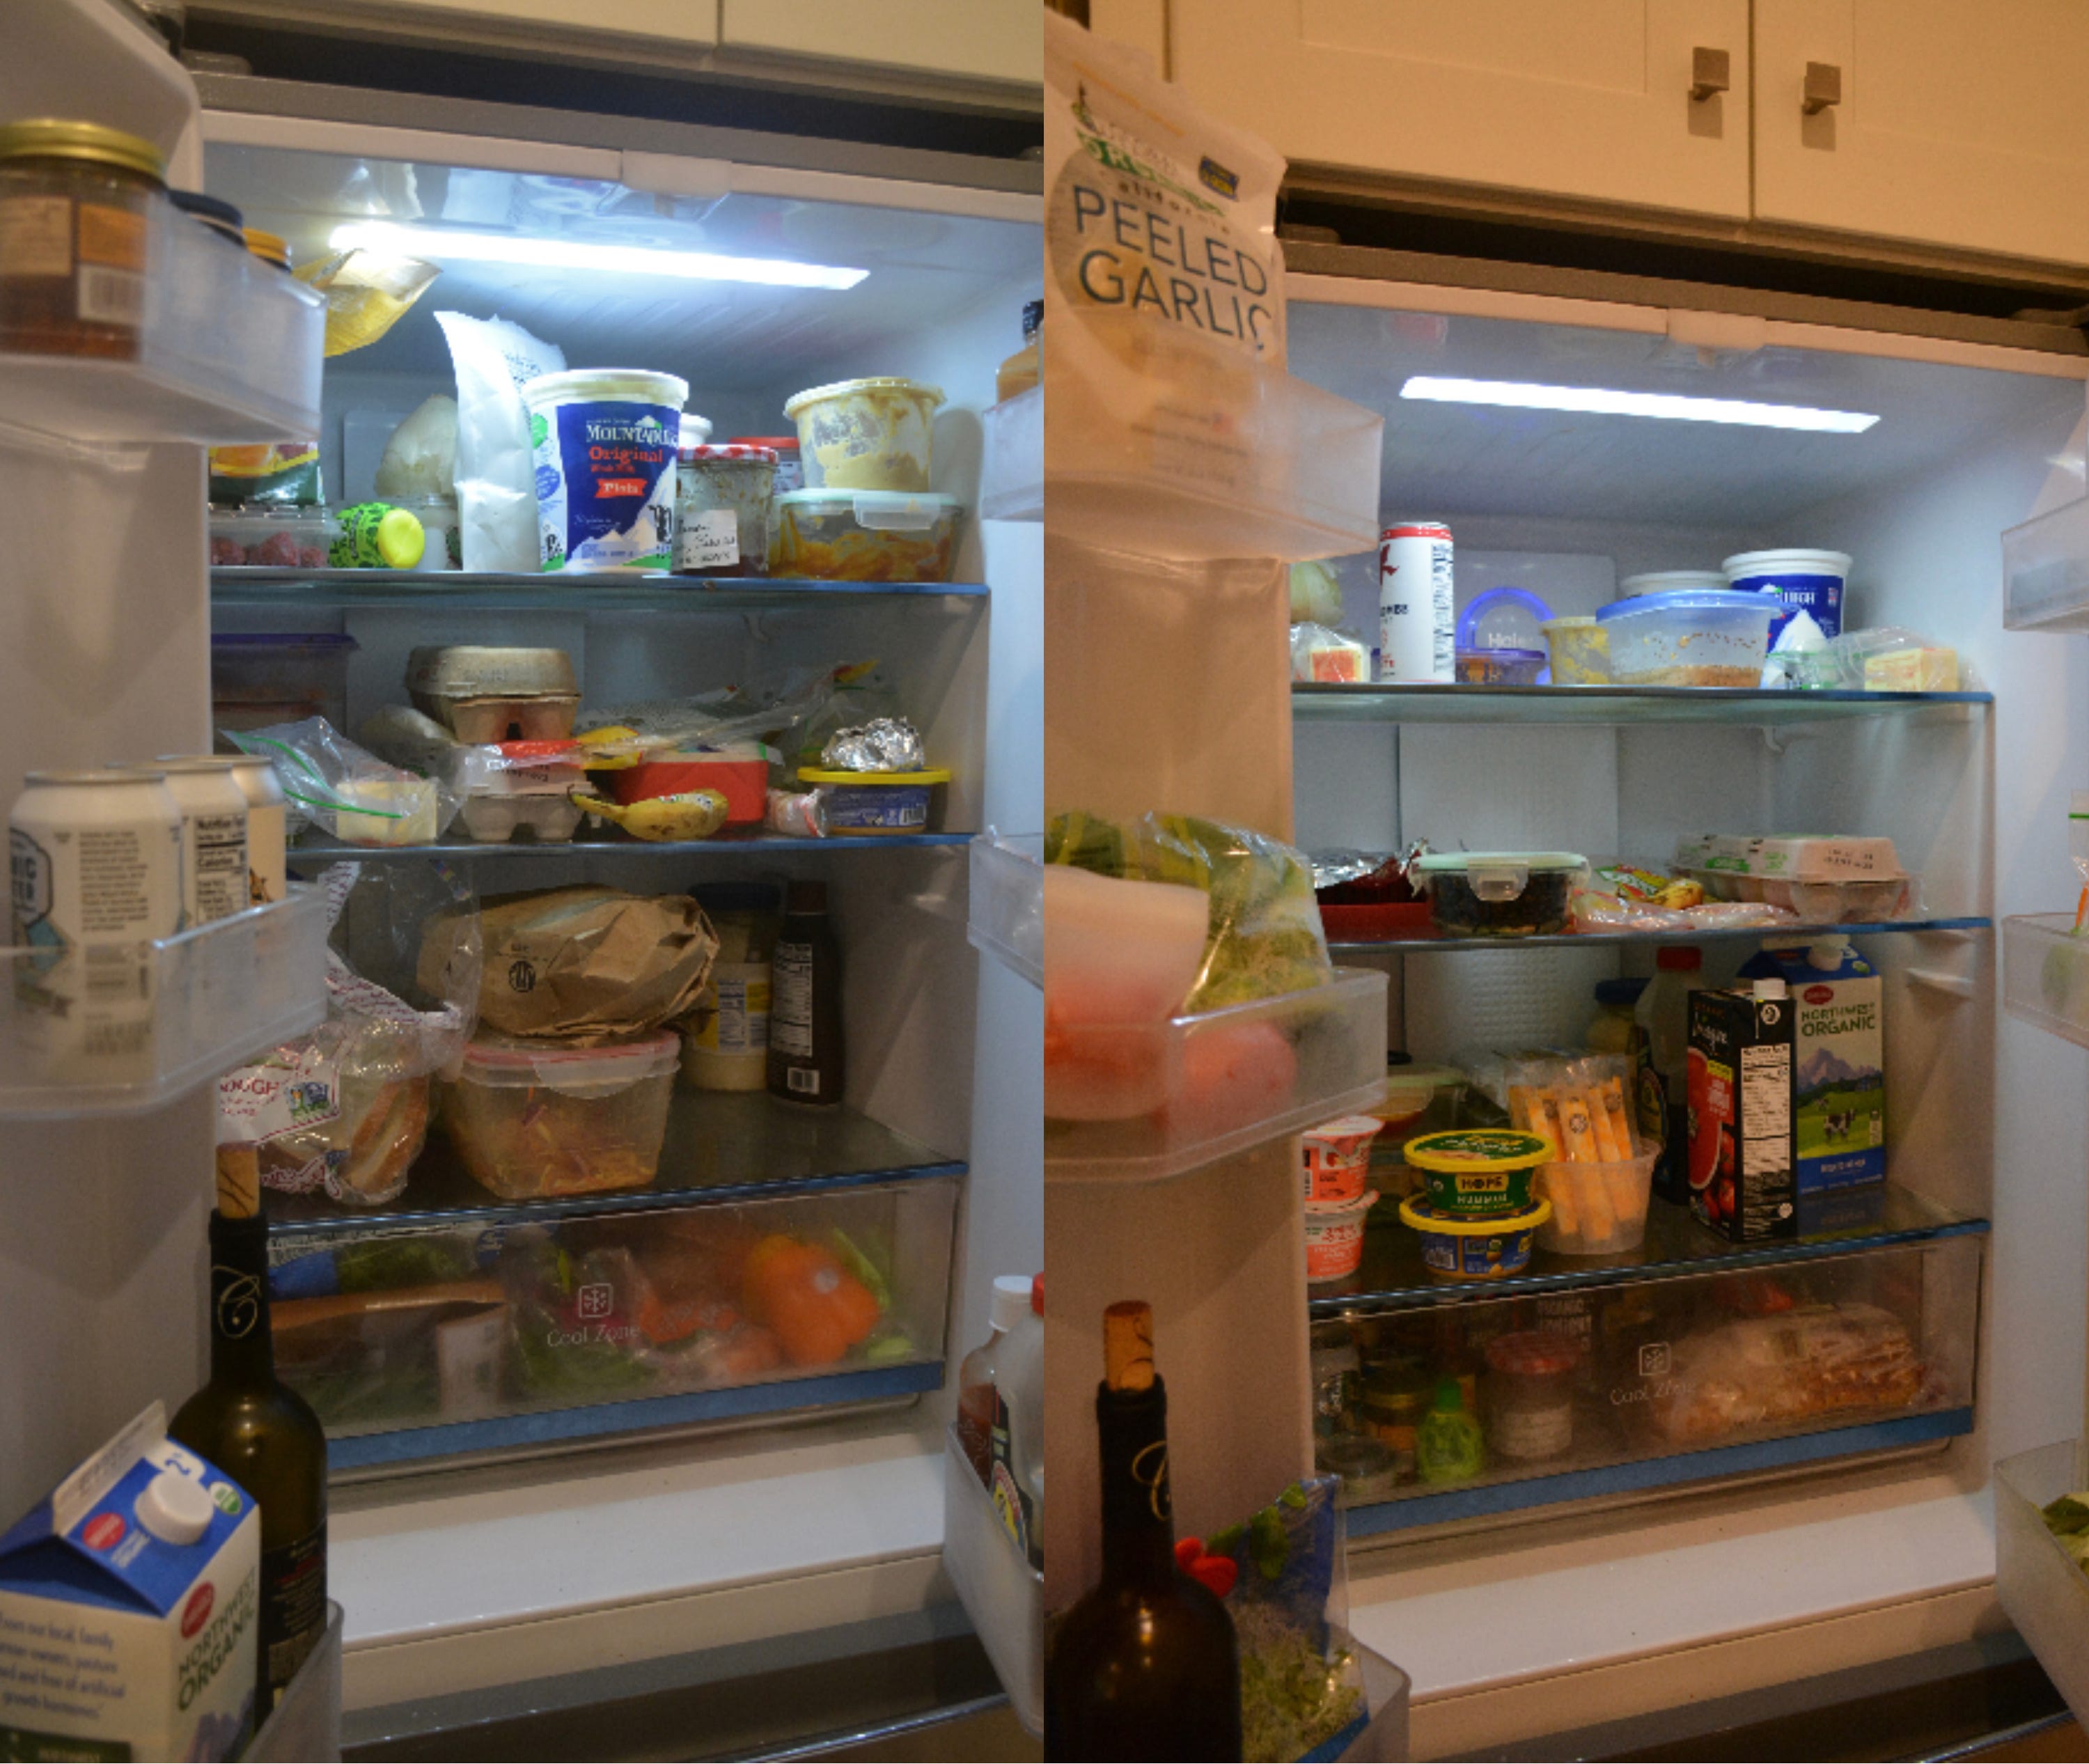 Kate Hulls Kühlschrank davor (links), Obst und Gemüse liegen in der Gemüseschublade, Gewürze sind in den Türregalen und alles andere ist überall.  Kate Hulls Kühlschrank danach (rechts), die Produkte befinden sich jetzt in der Kühlschranktür und die Gewürze befinden sich in der Gemüseschublade. 